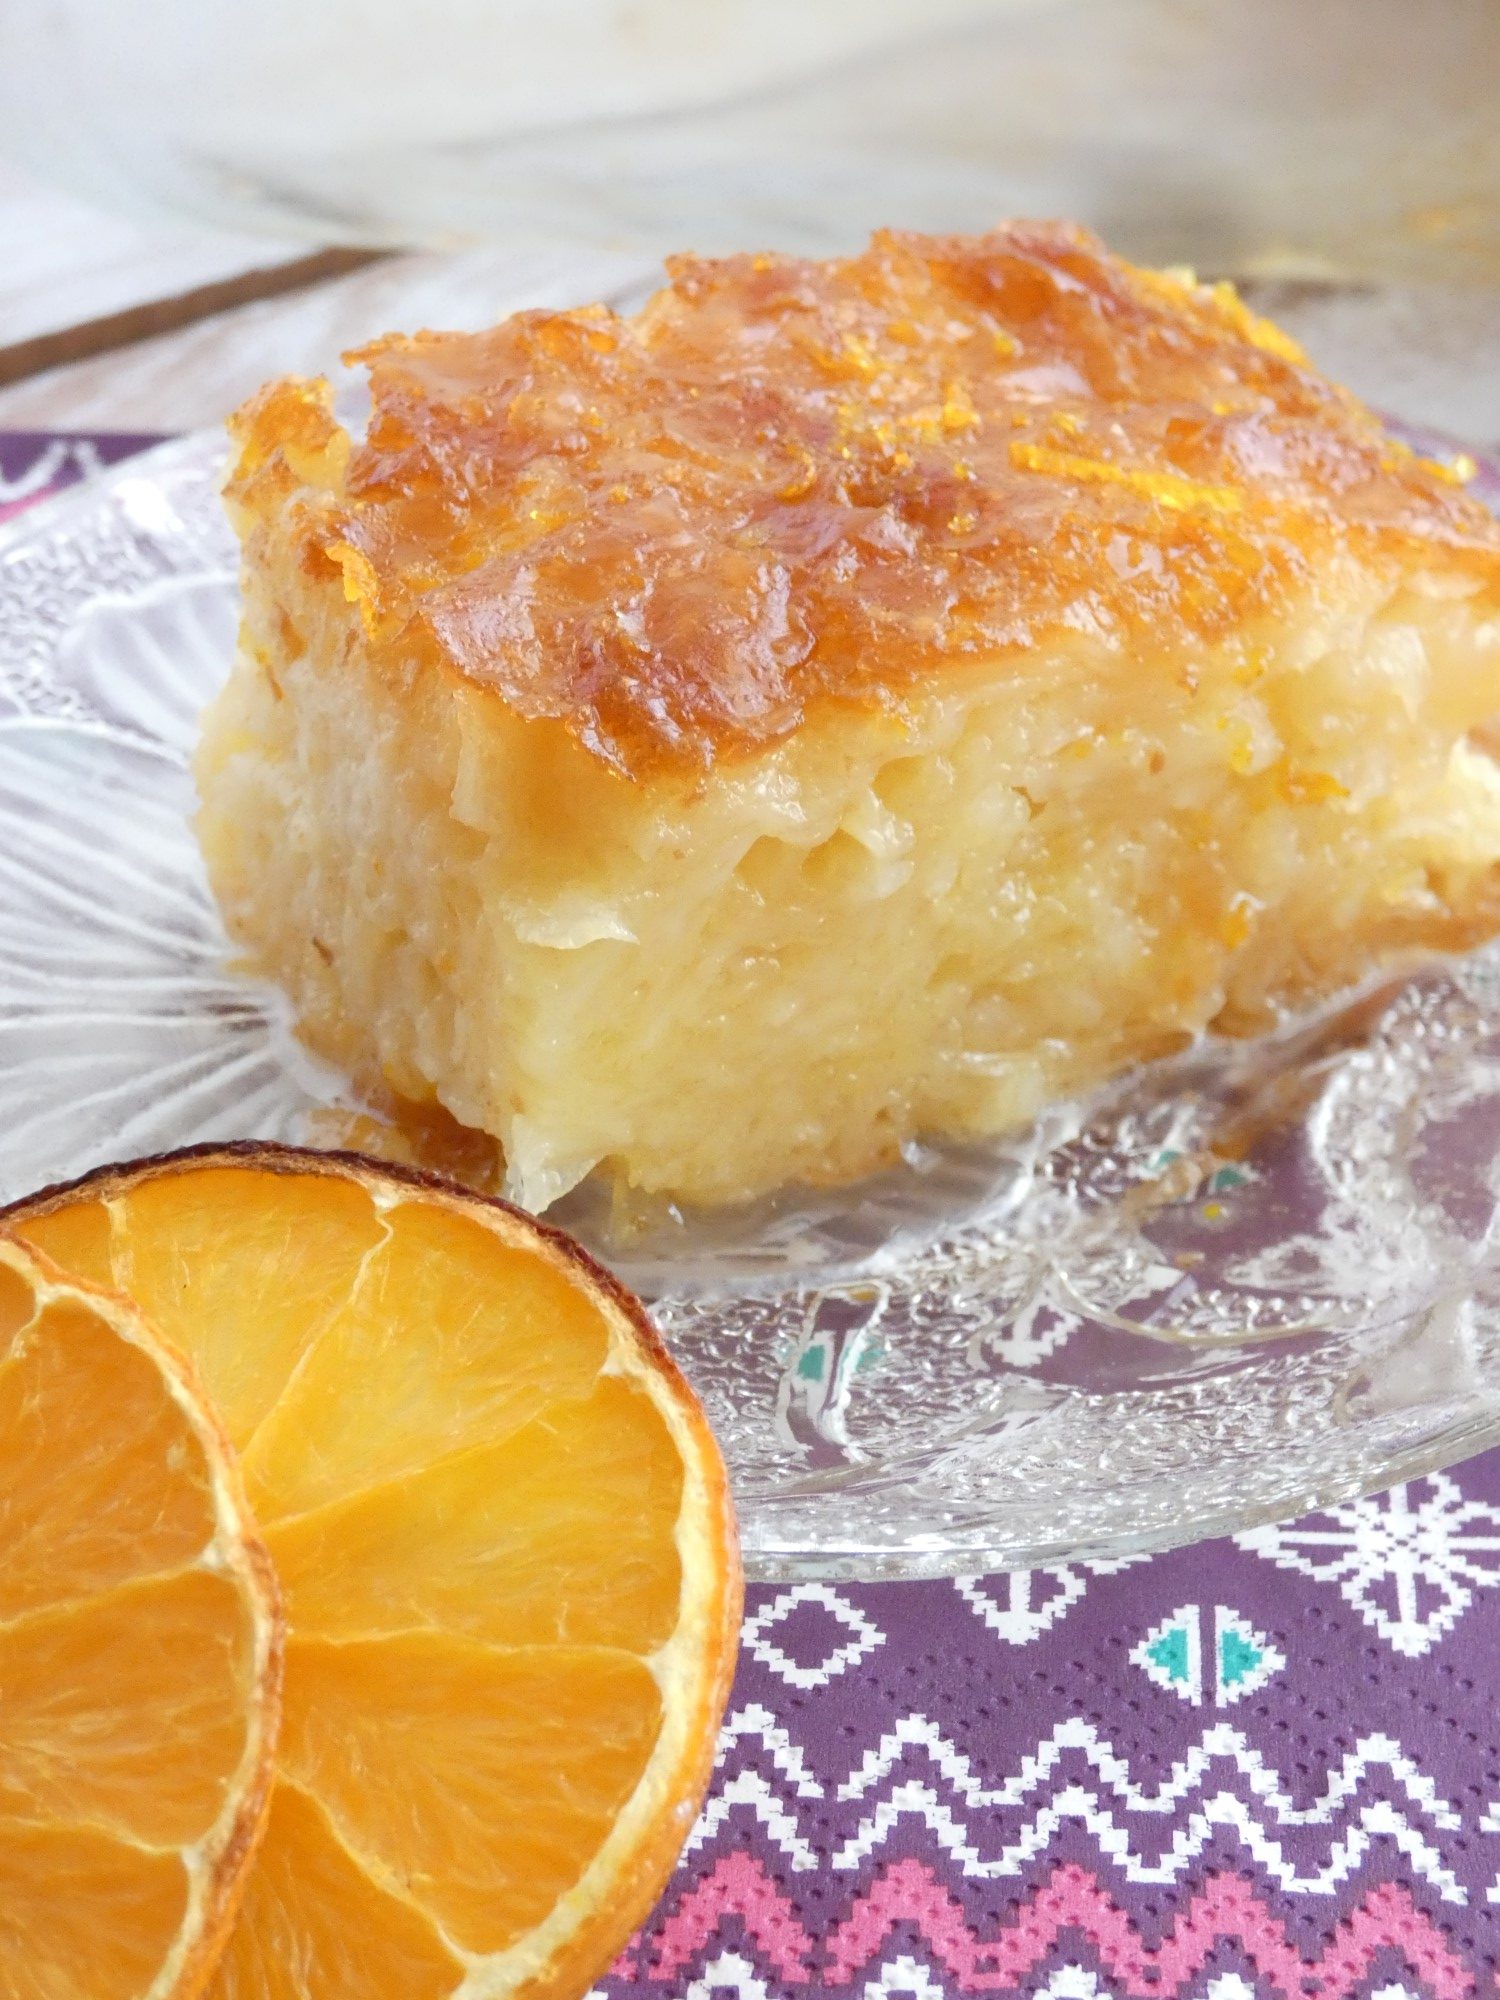 Portokalopita-Greek orange cake with syrup | my baking saga